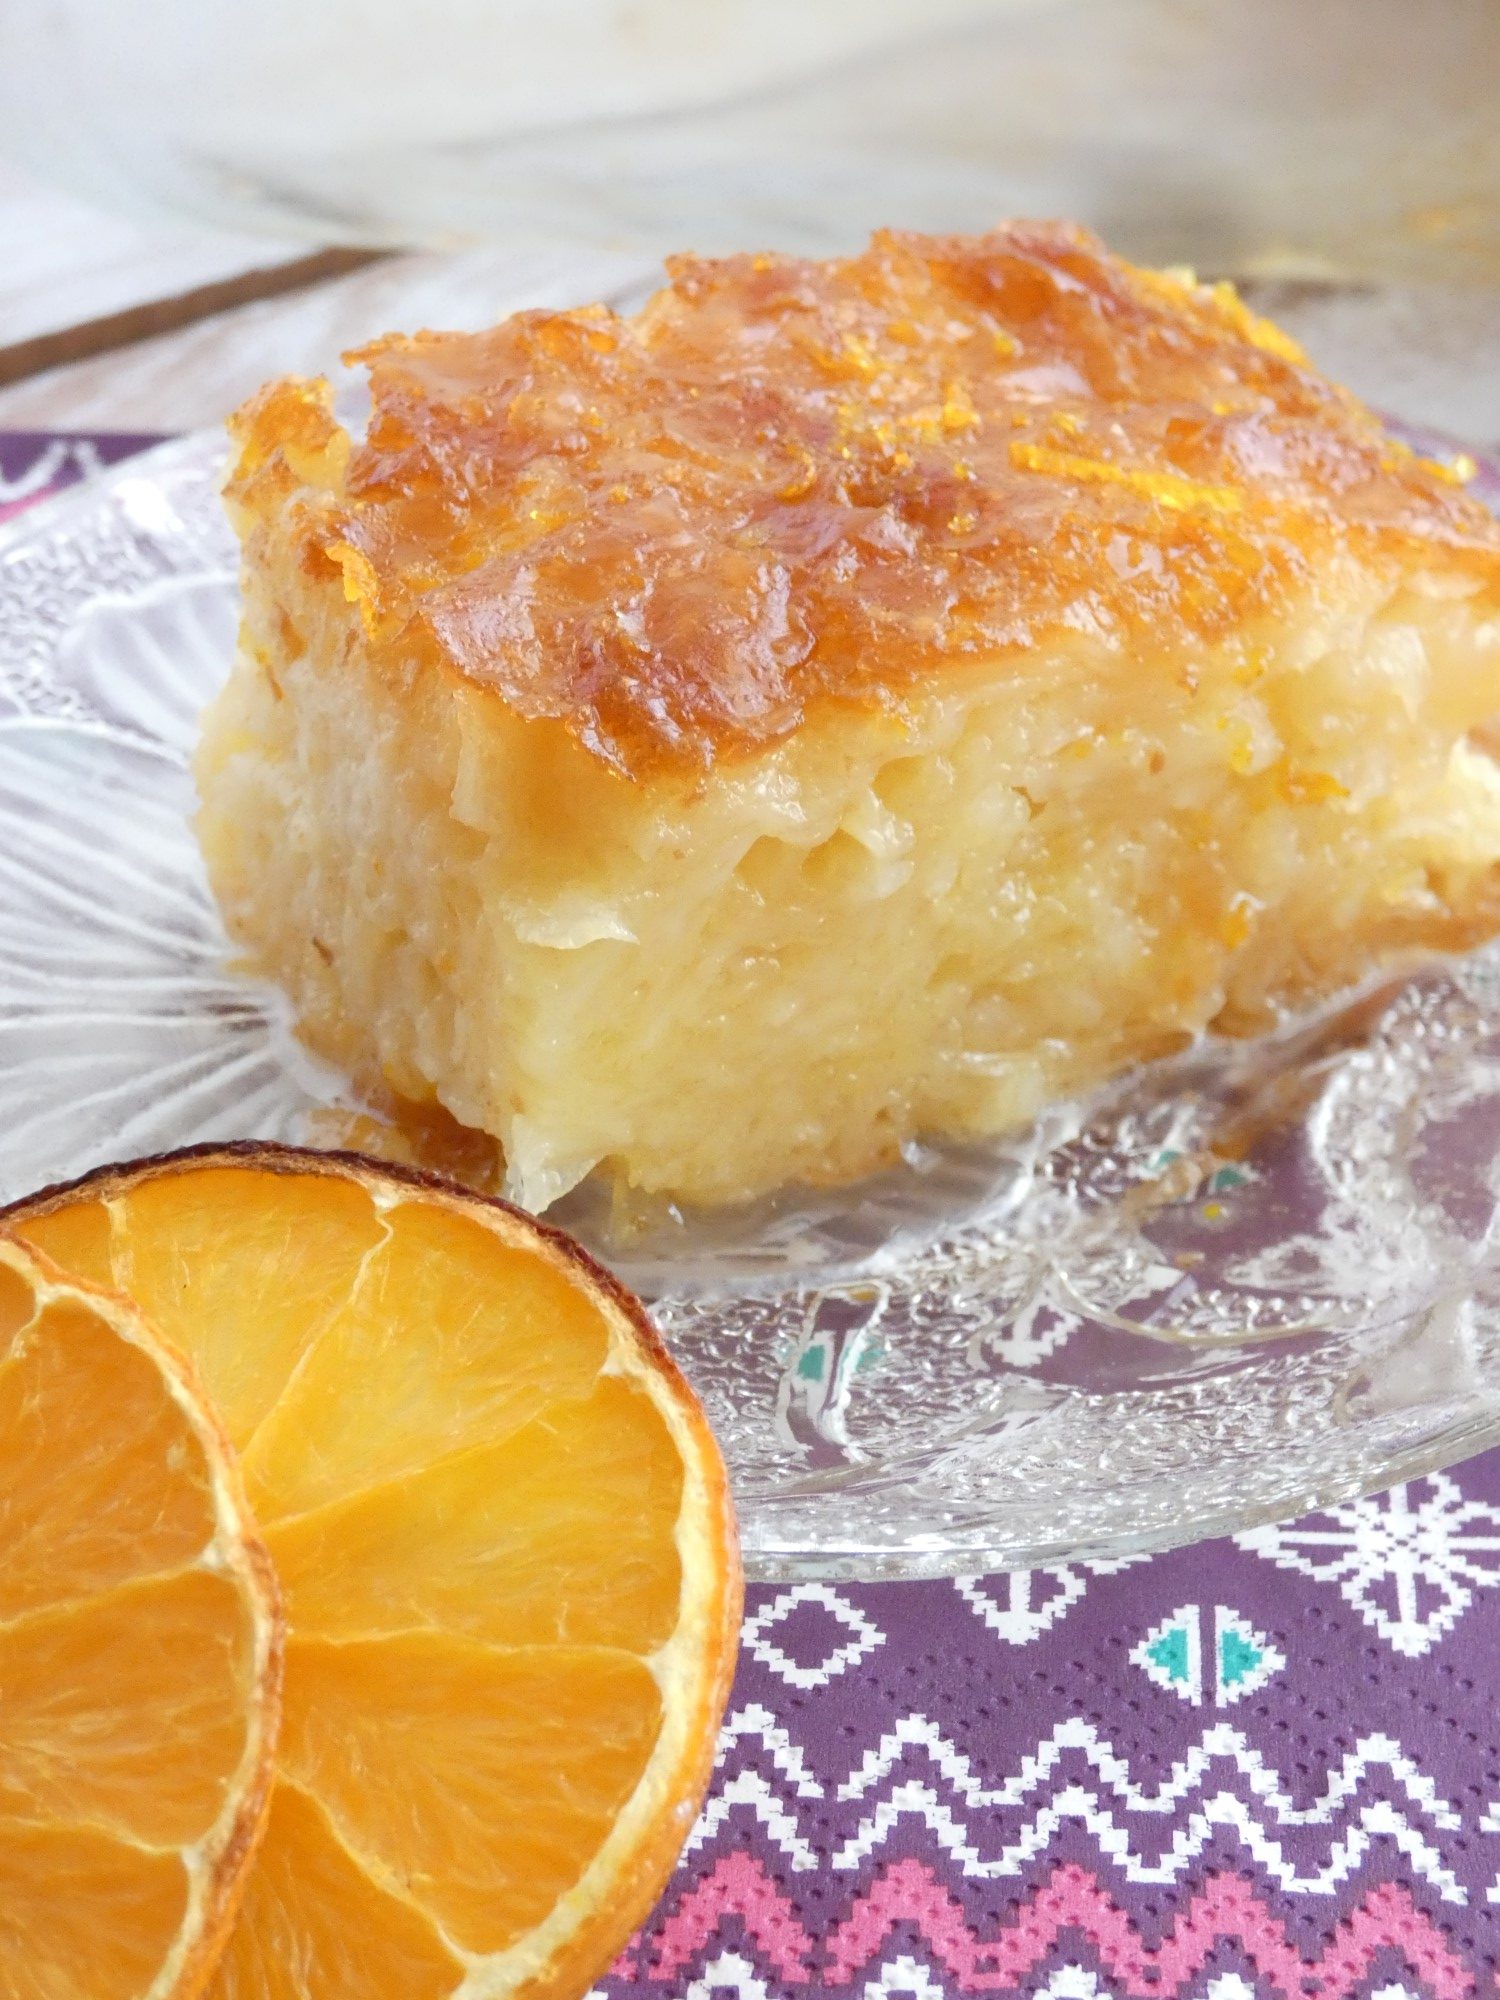 Portokalopita-Greek orange cake with syrup | my baking saga